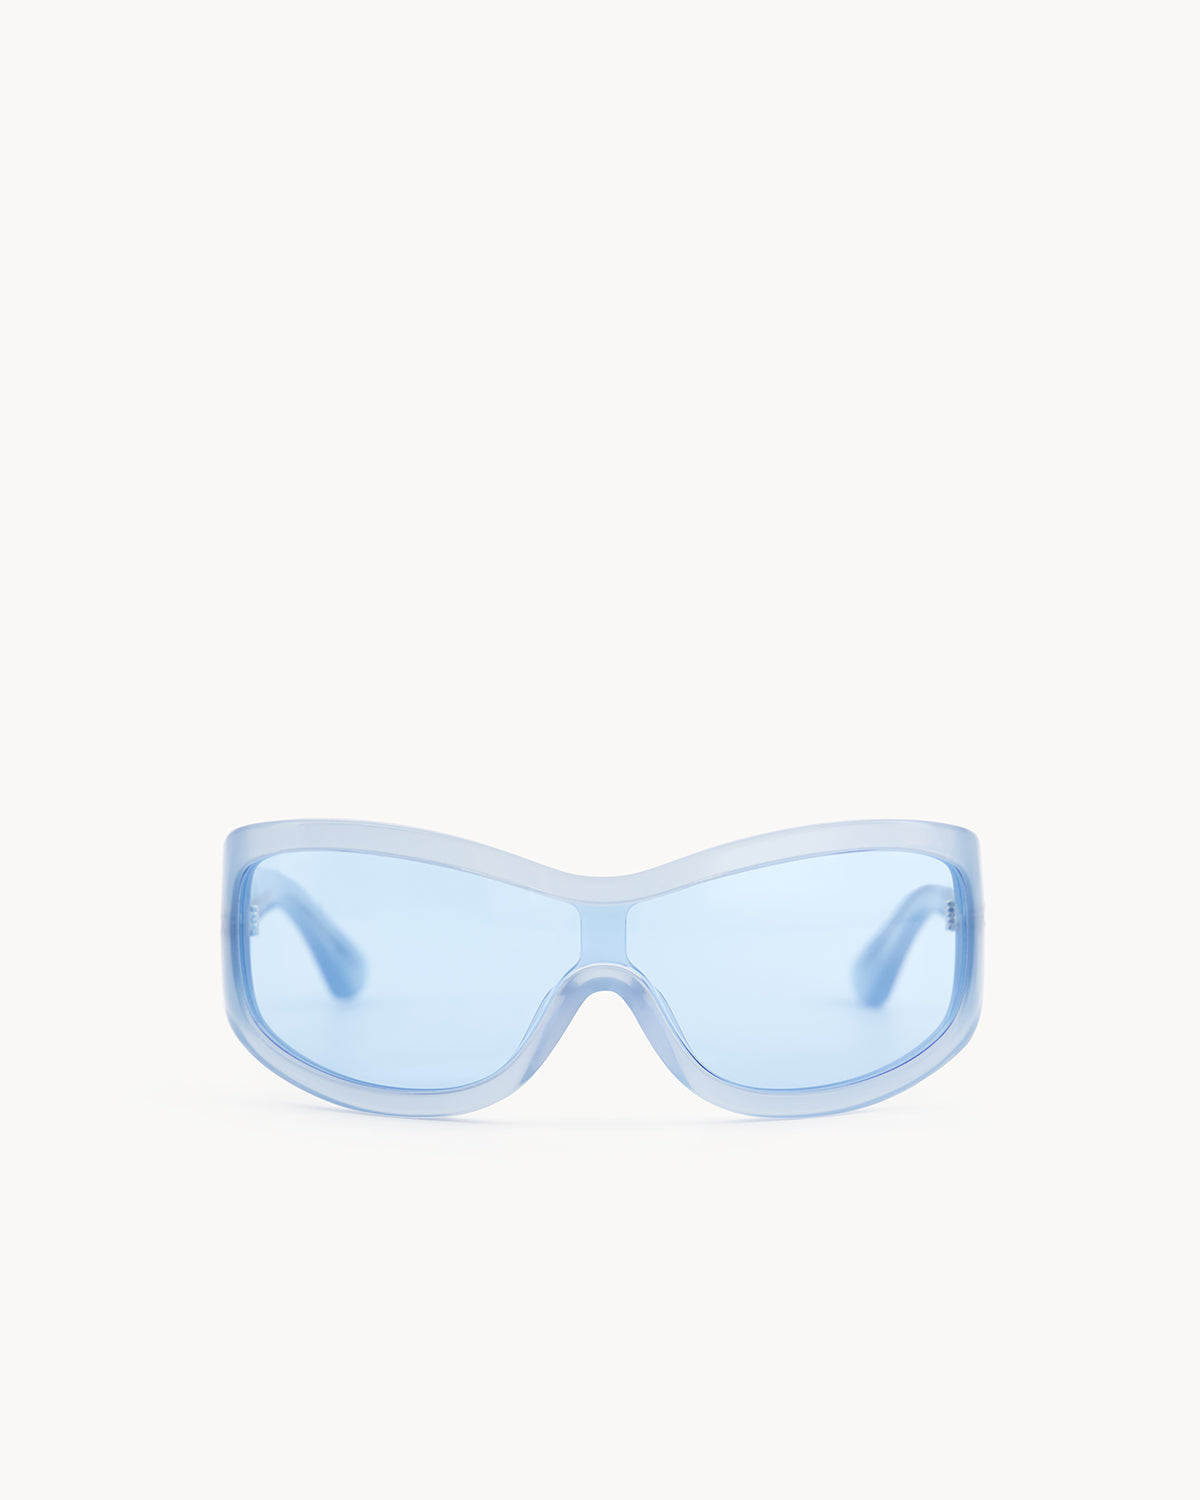 Port Tanger Nunny Sunglasses in Rif Blue Acetate and Rif Blue Lenses 1